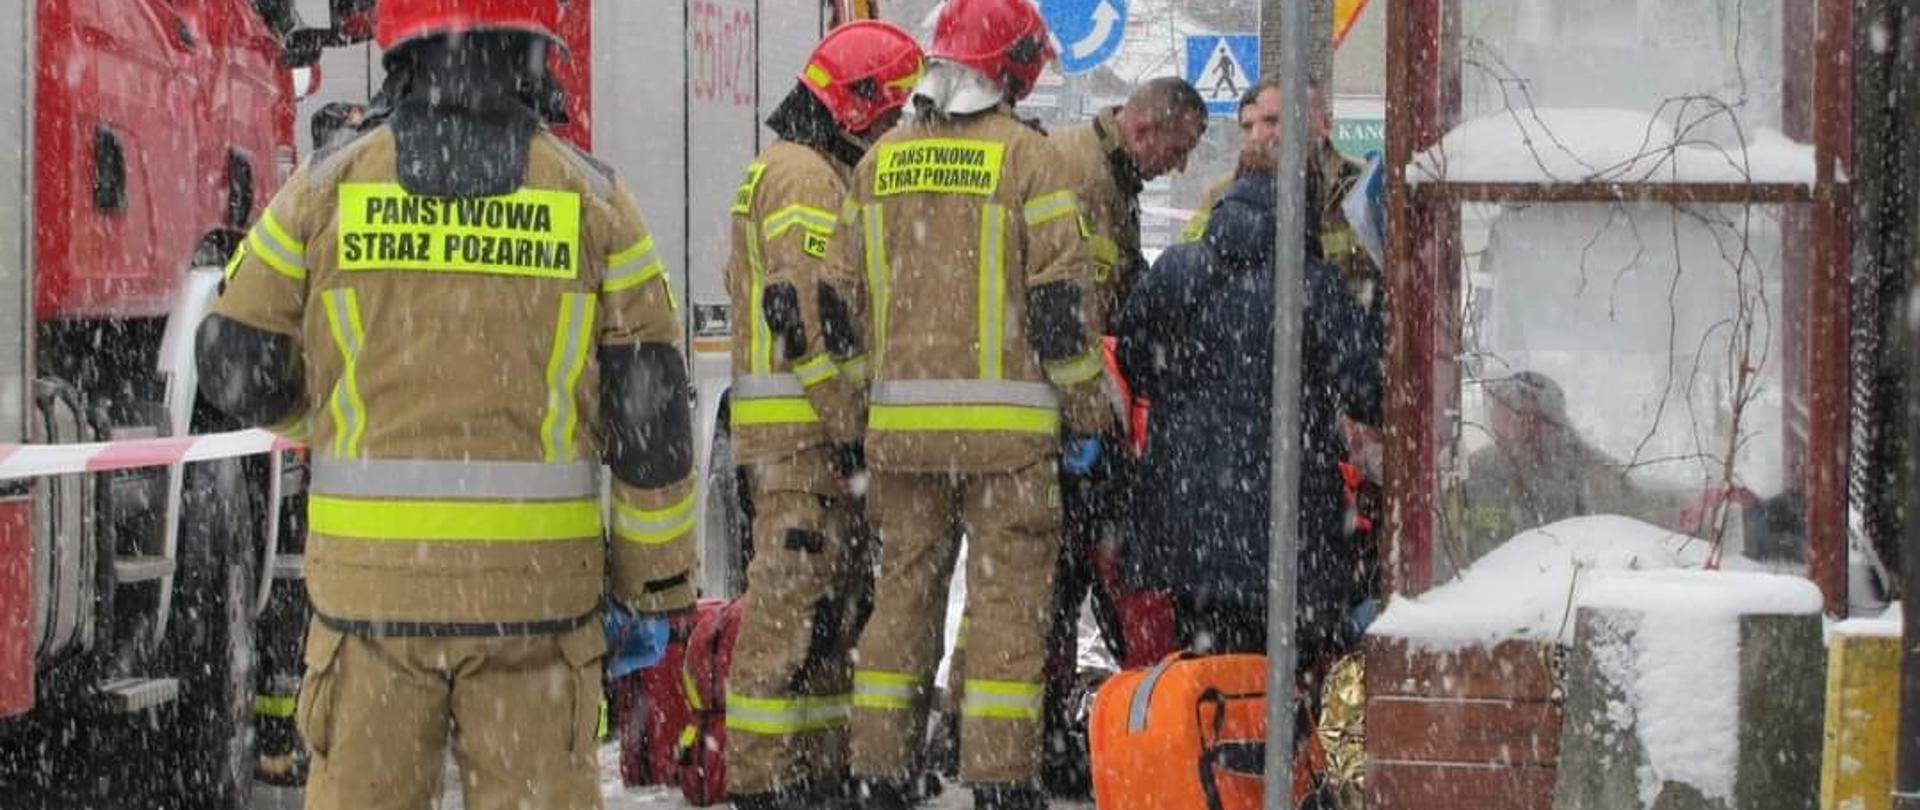 Na zdjęciu widzimy strażaków udzielających kwalifikowanej pierwsze pomocy 72 letniemu mężczyźnie. 